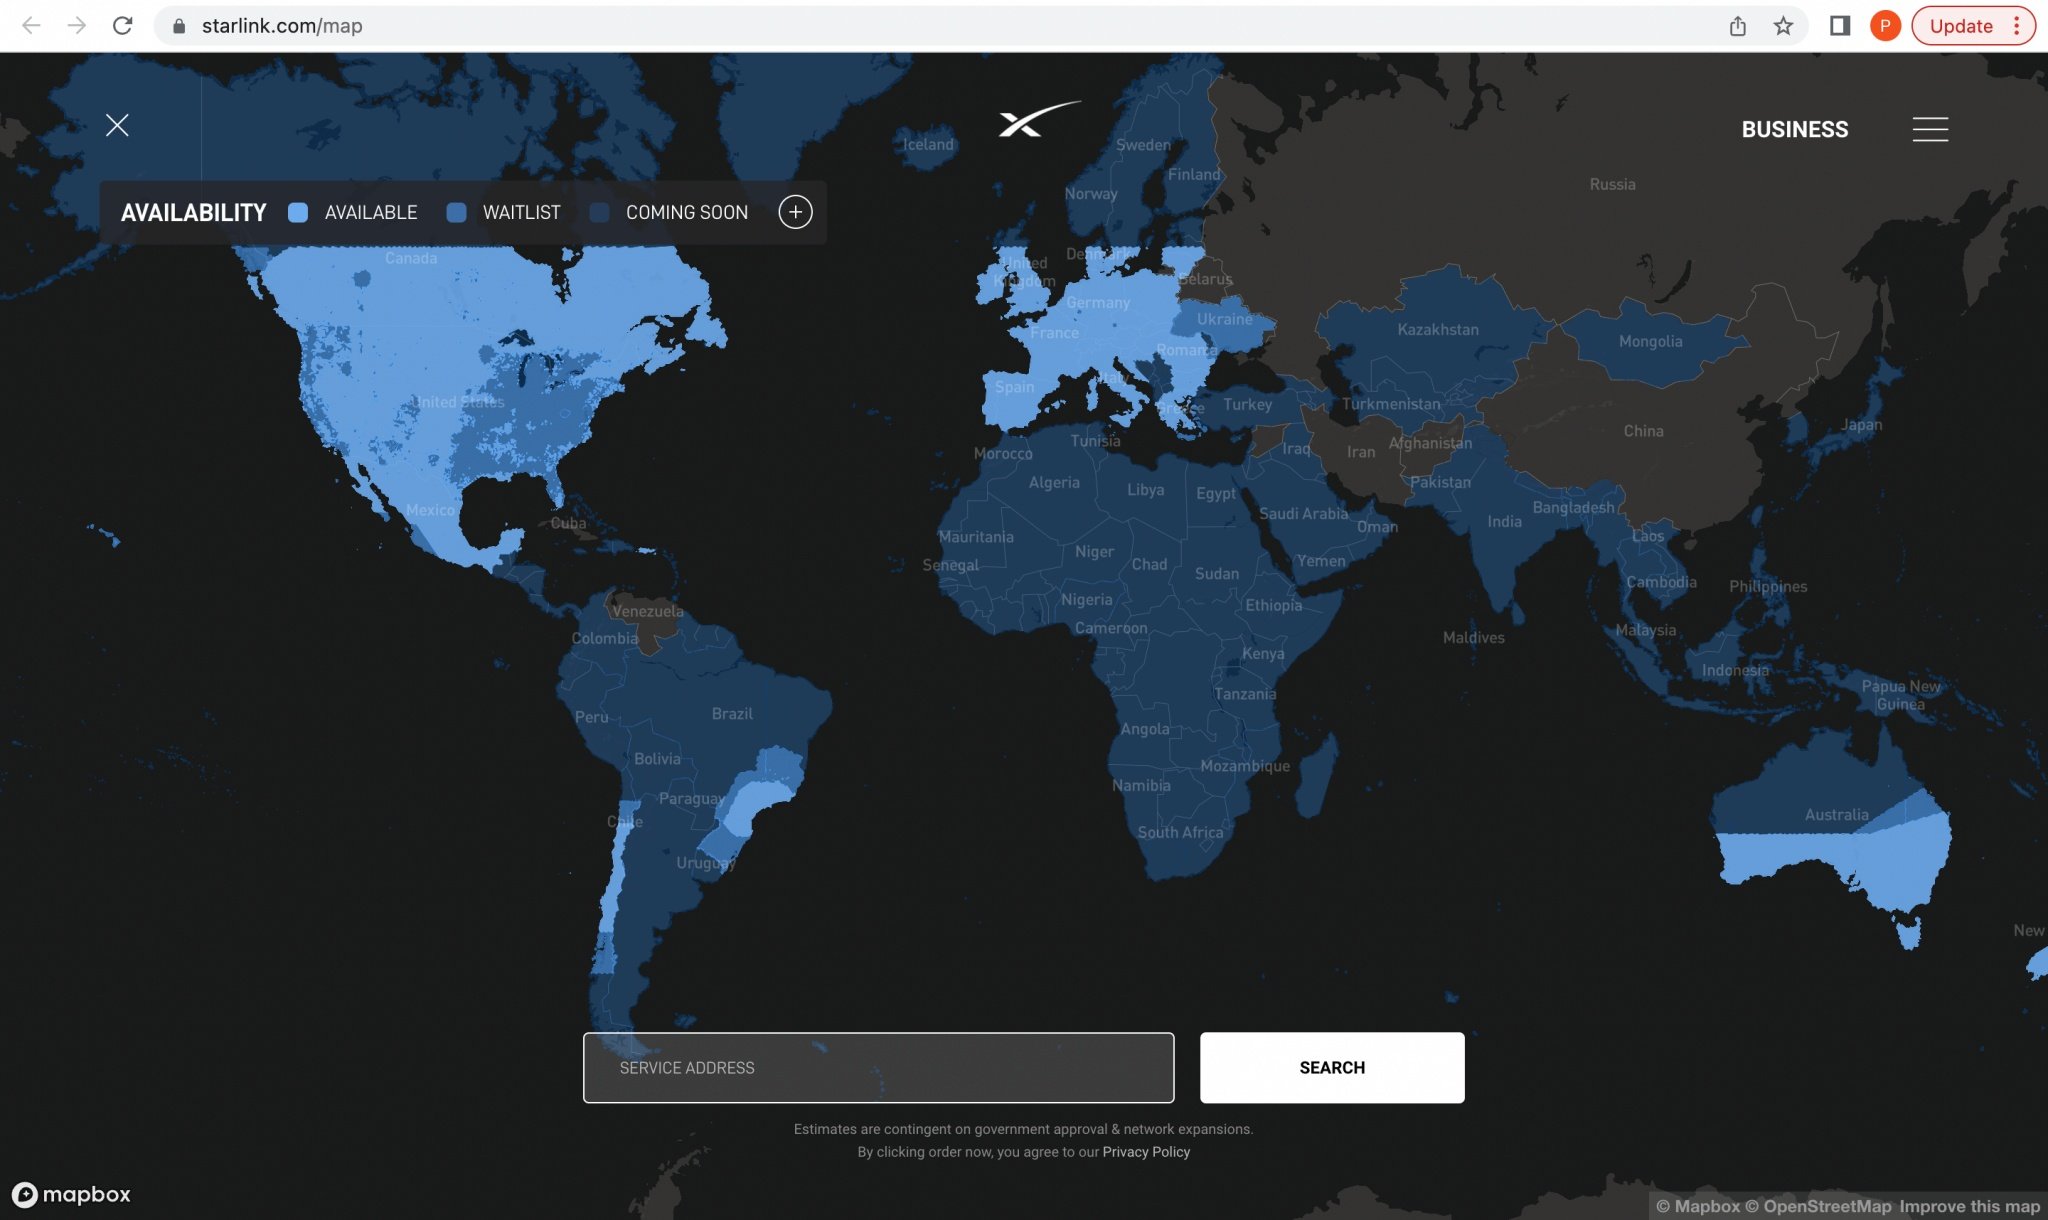 Dịch vụ Internet vệ tinh của Starlink đã có mặt tại 32 quốc gia trên thế giới